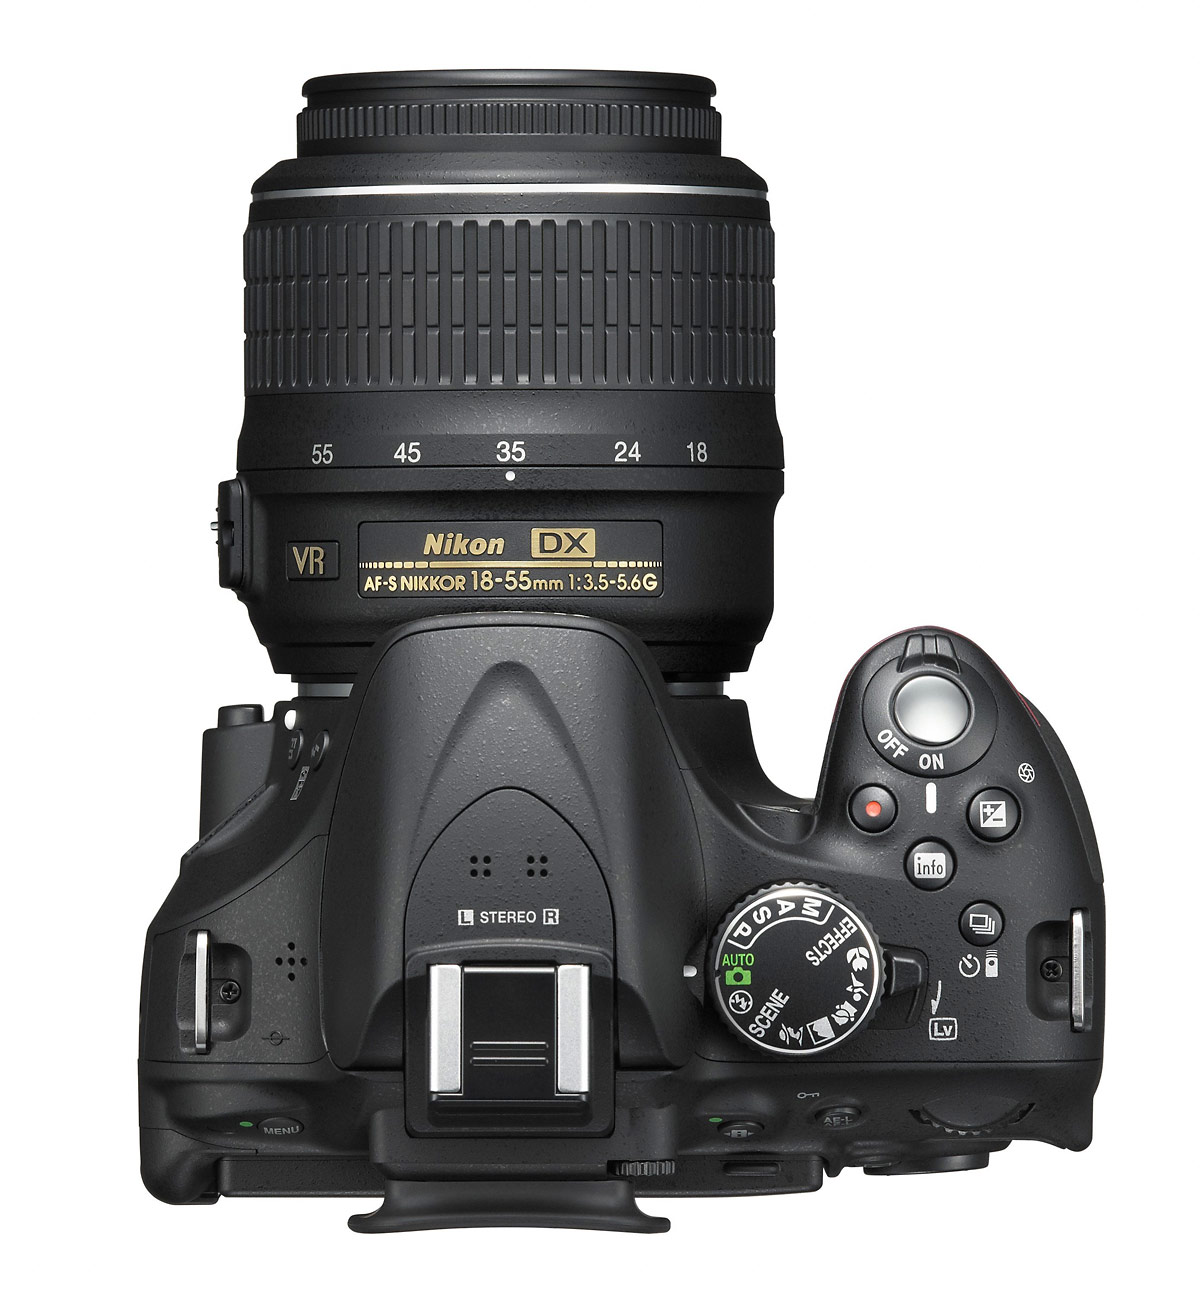 Nikon D5200 Digital SLR - Top & Controls